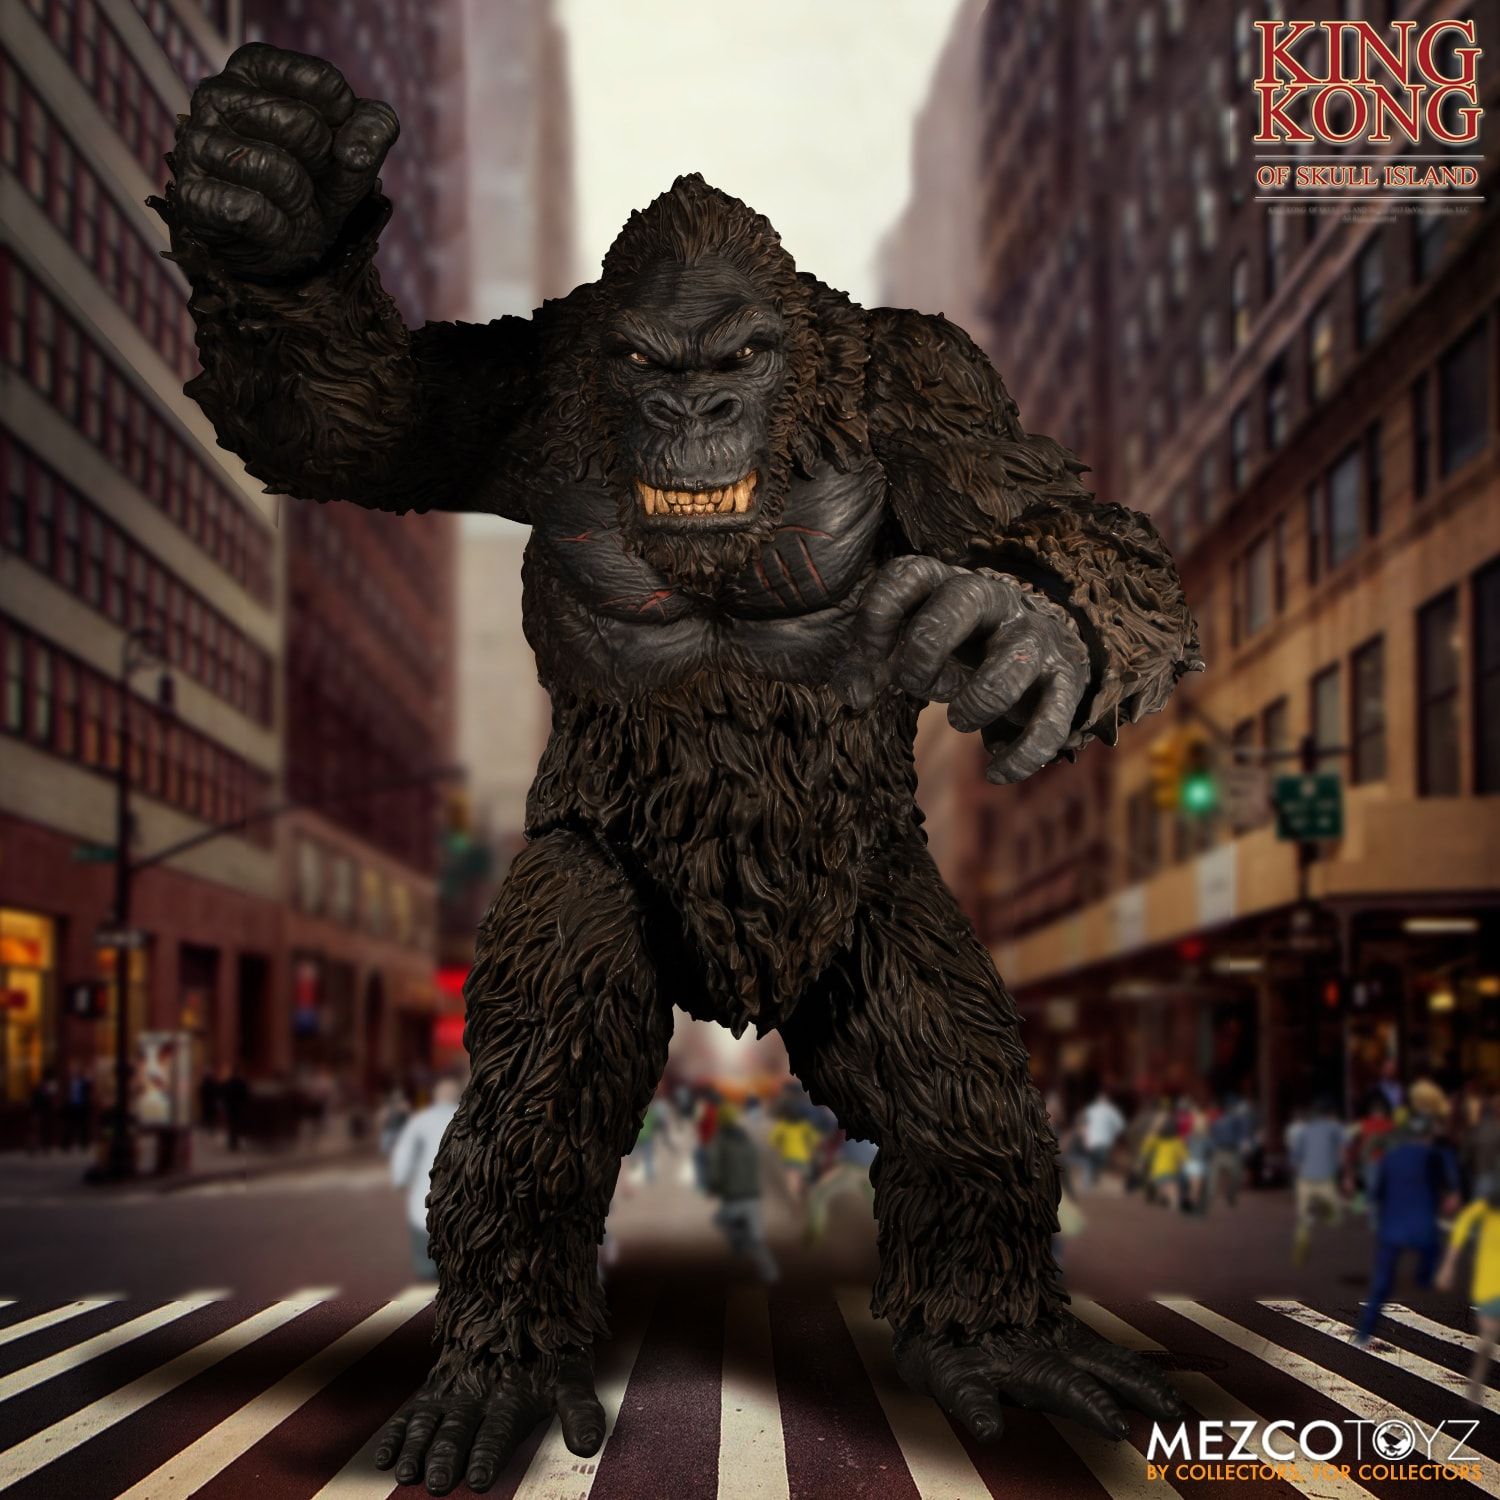 Mezco Kong 5